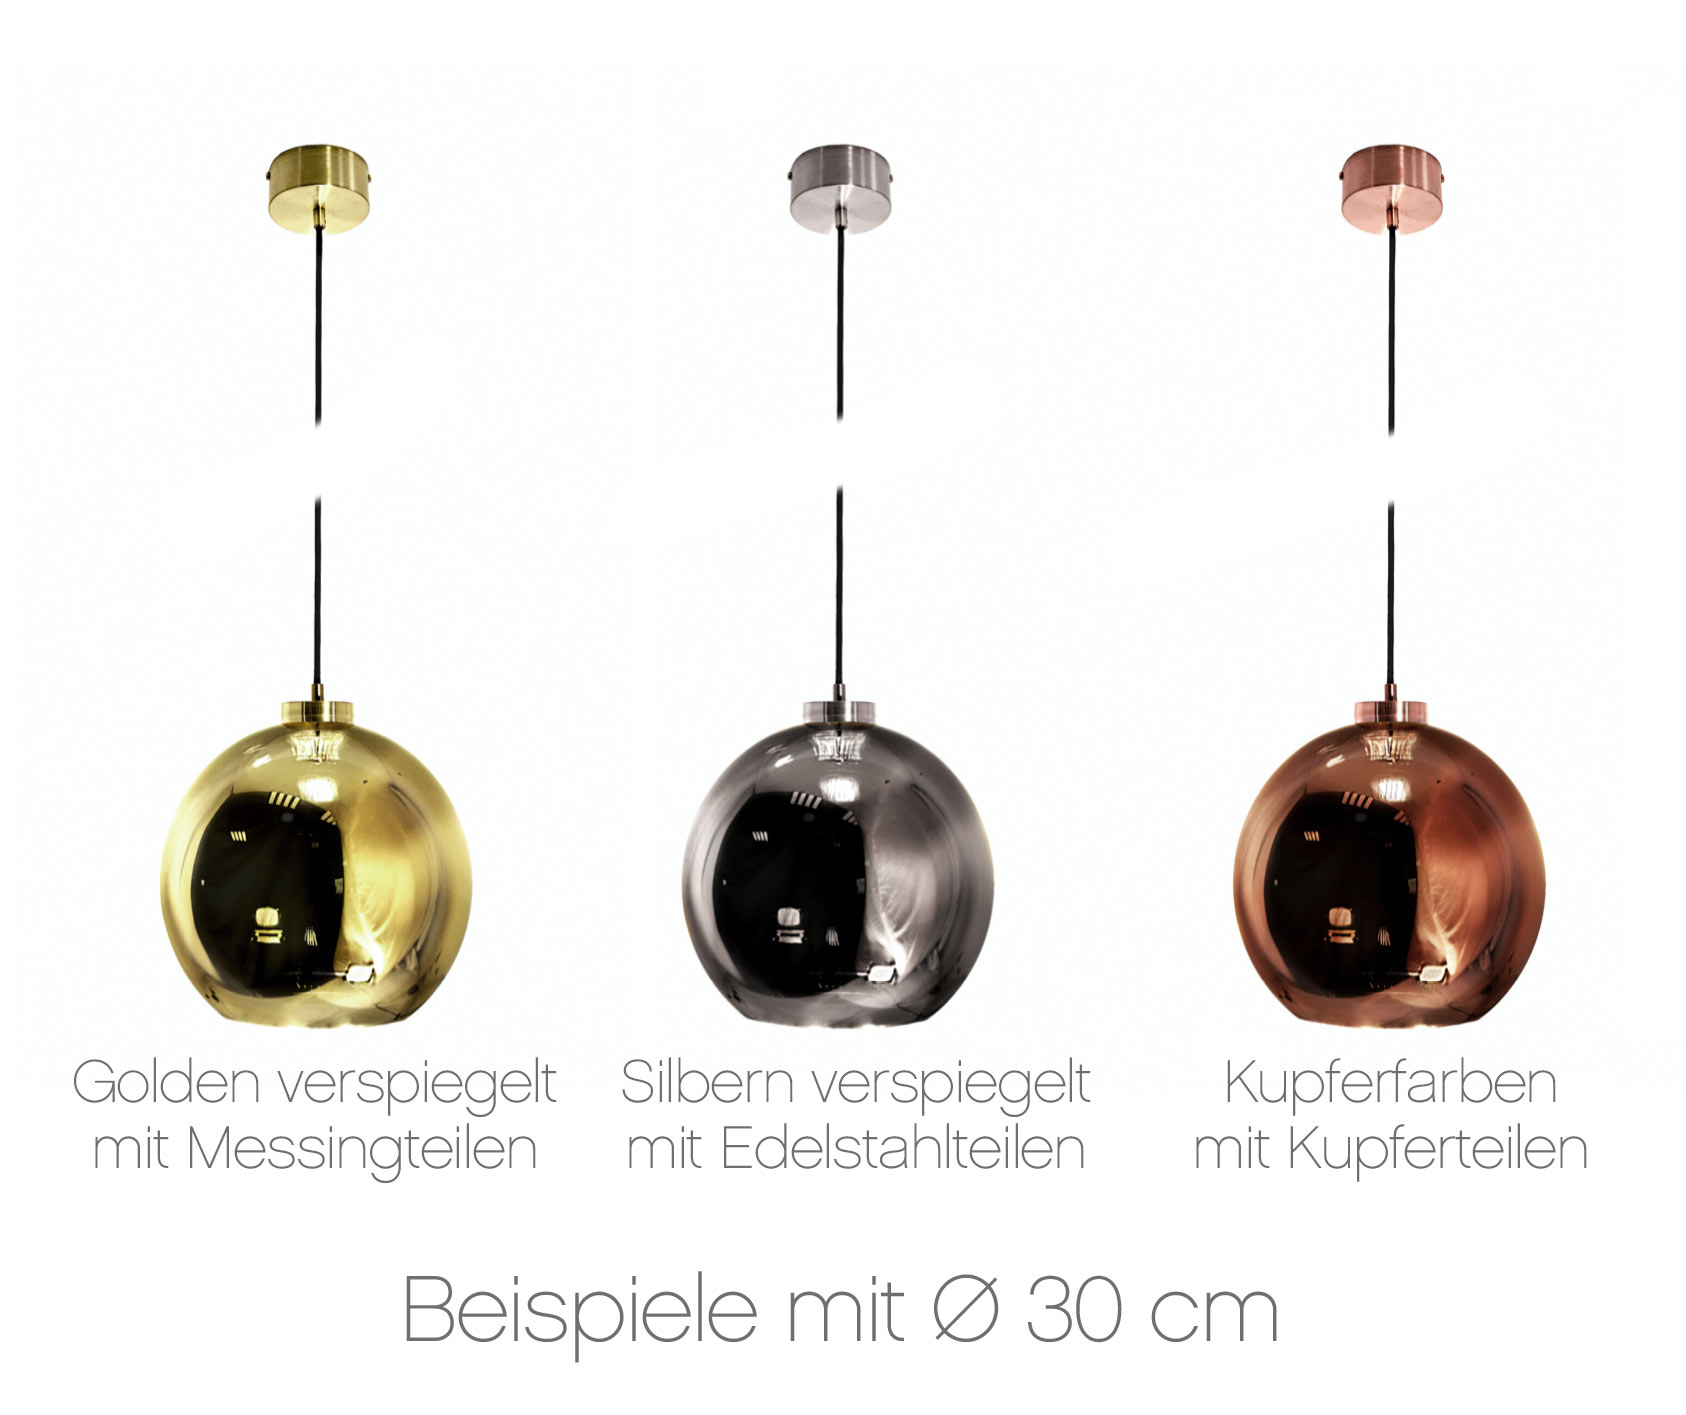 Kugel-Pendelleuchte aus Spiegel-Glas (gold/silbern/kupfern) Ø 15–30 cm: Glänzend verspiegelte Kugel-Hängelampen in verschiedenen Glas-Tönungen, 30 cm Durchmesser